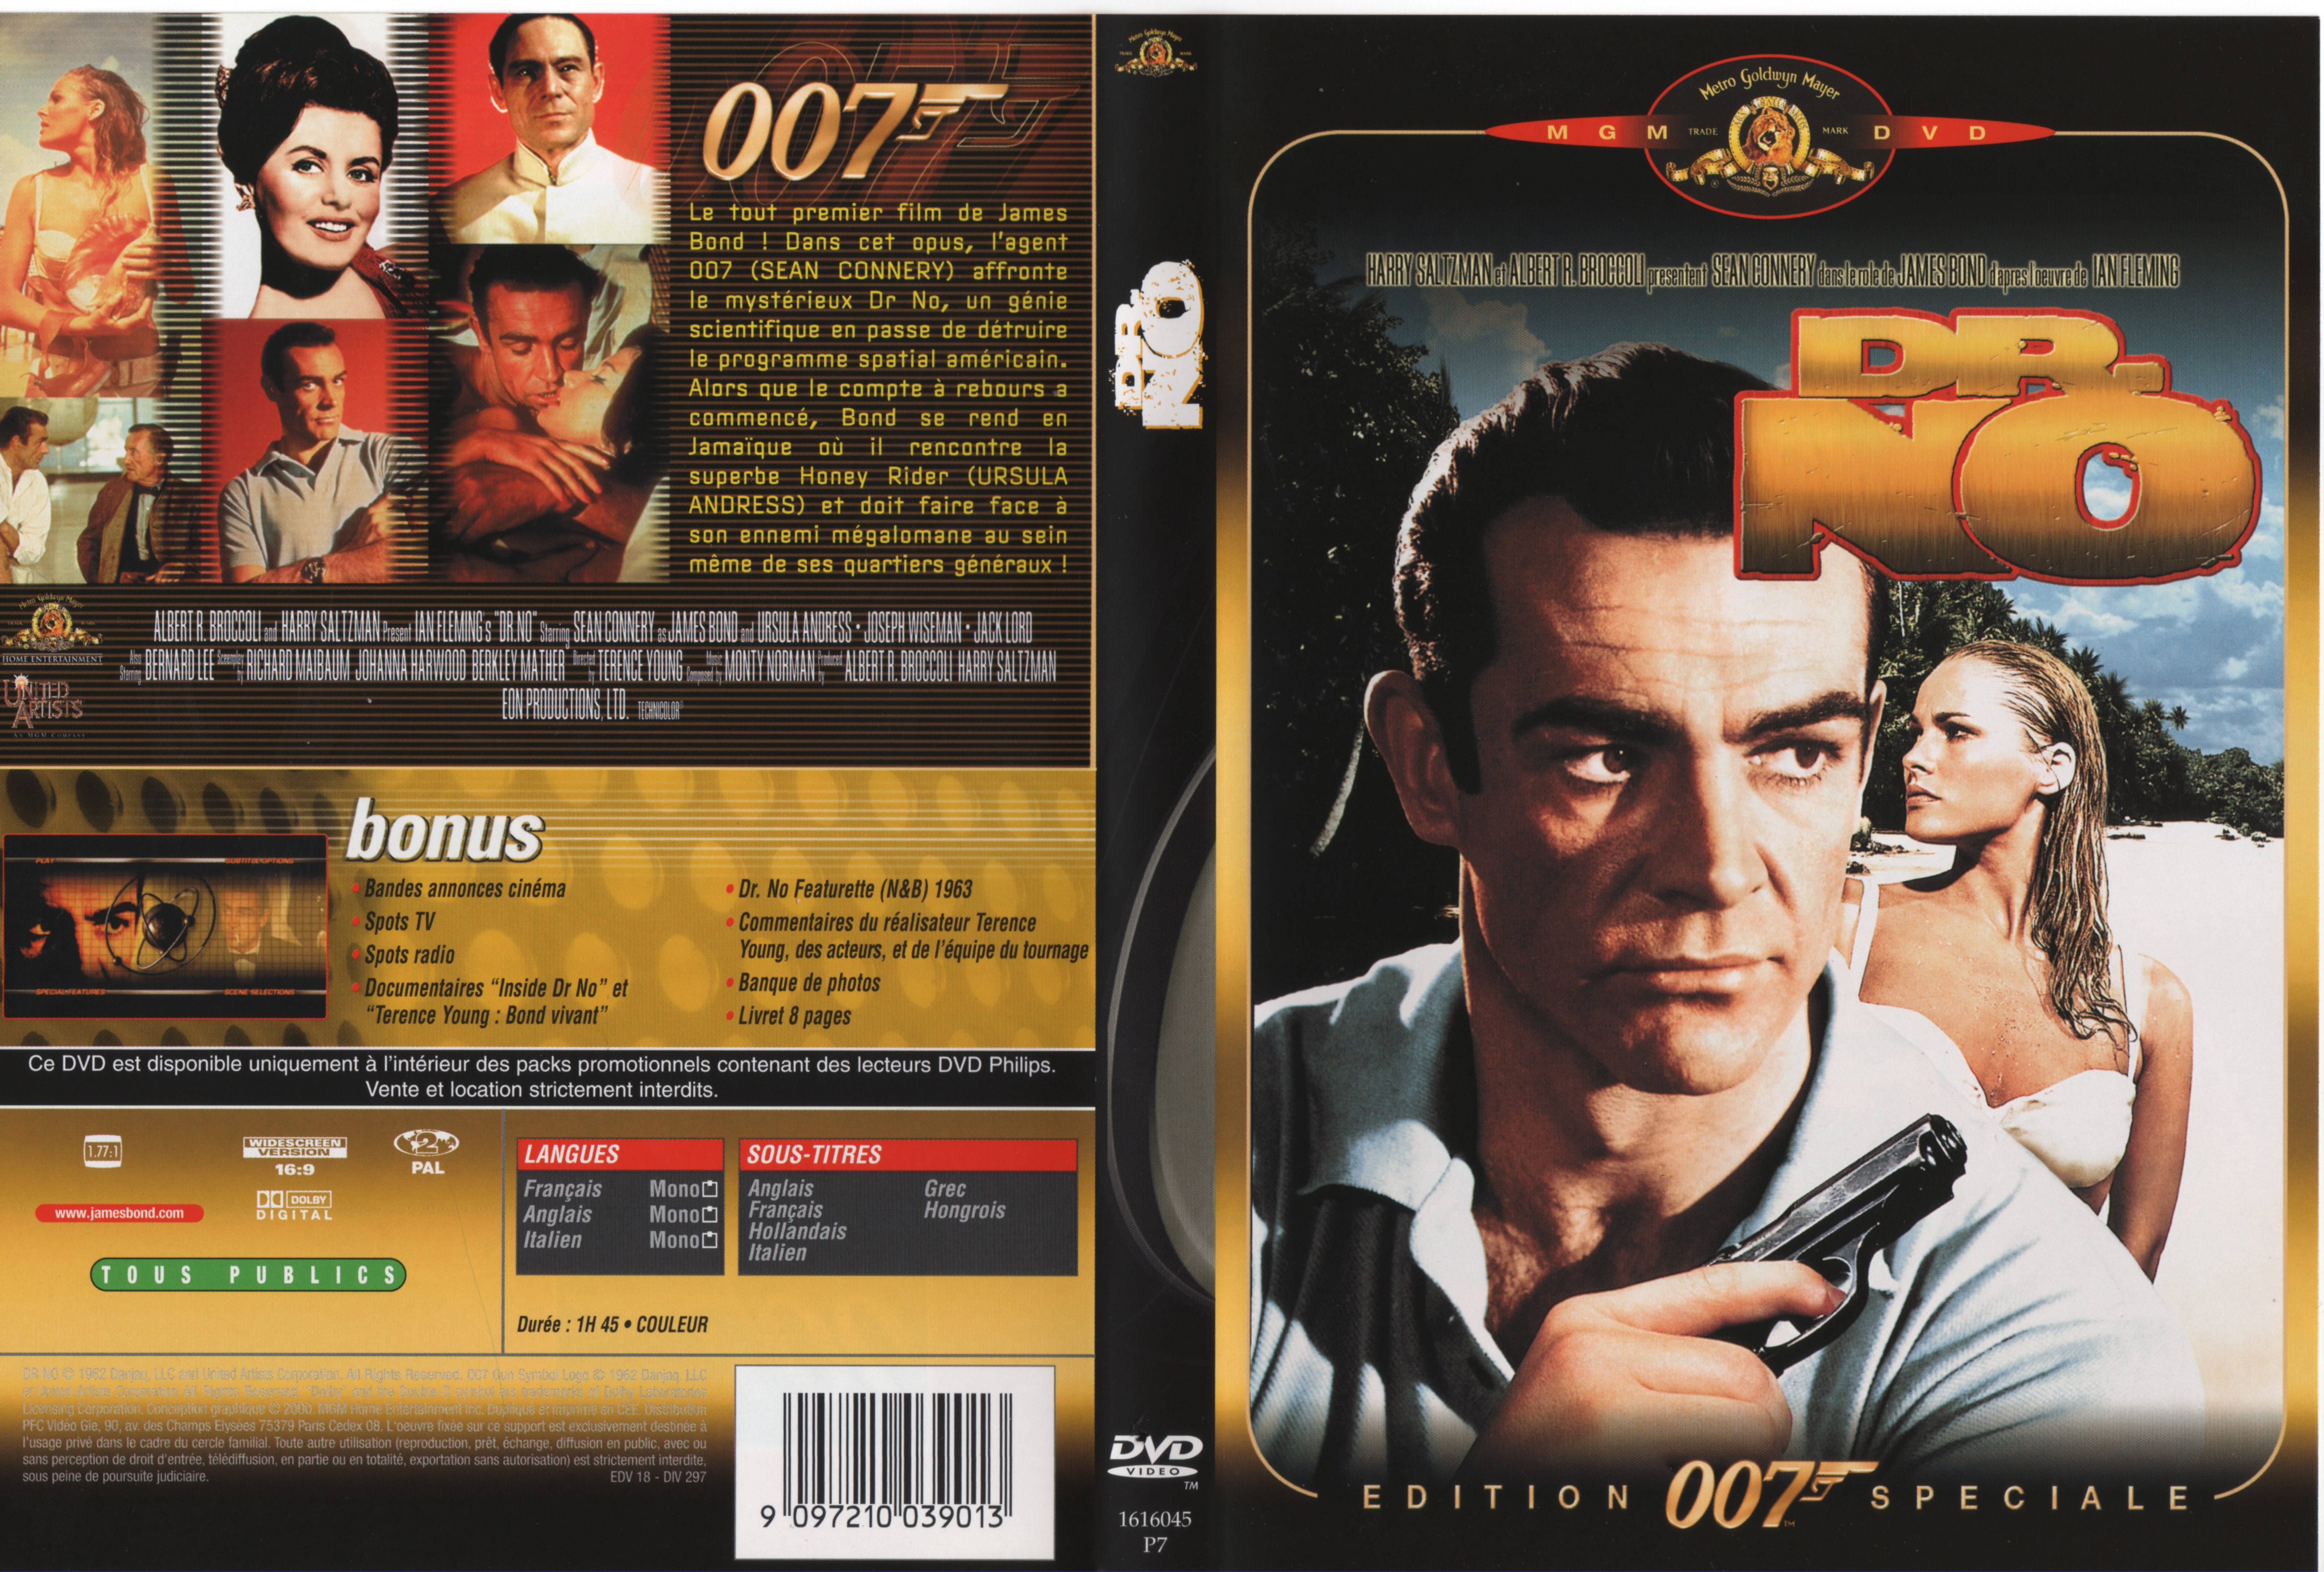 Jaquette DVD James Bond 007 James bond contre docteur No